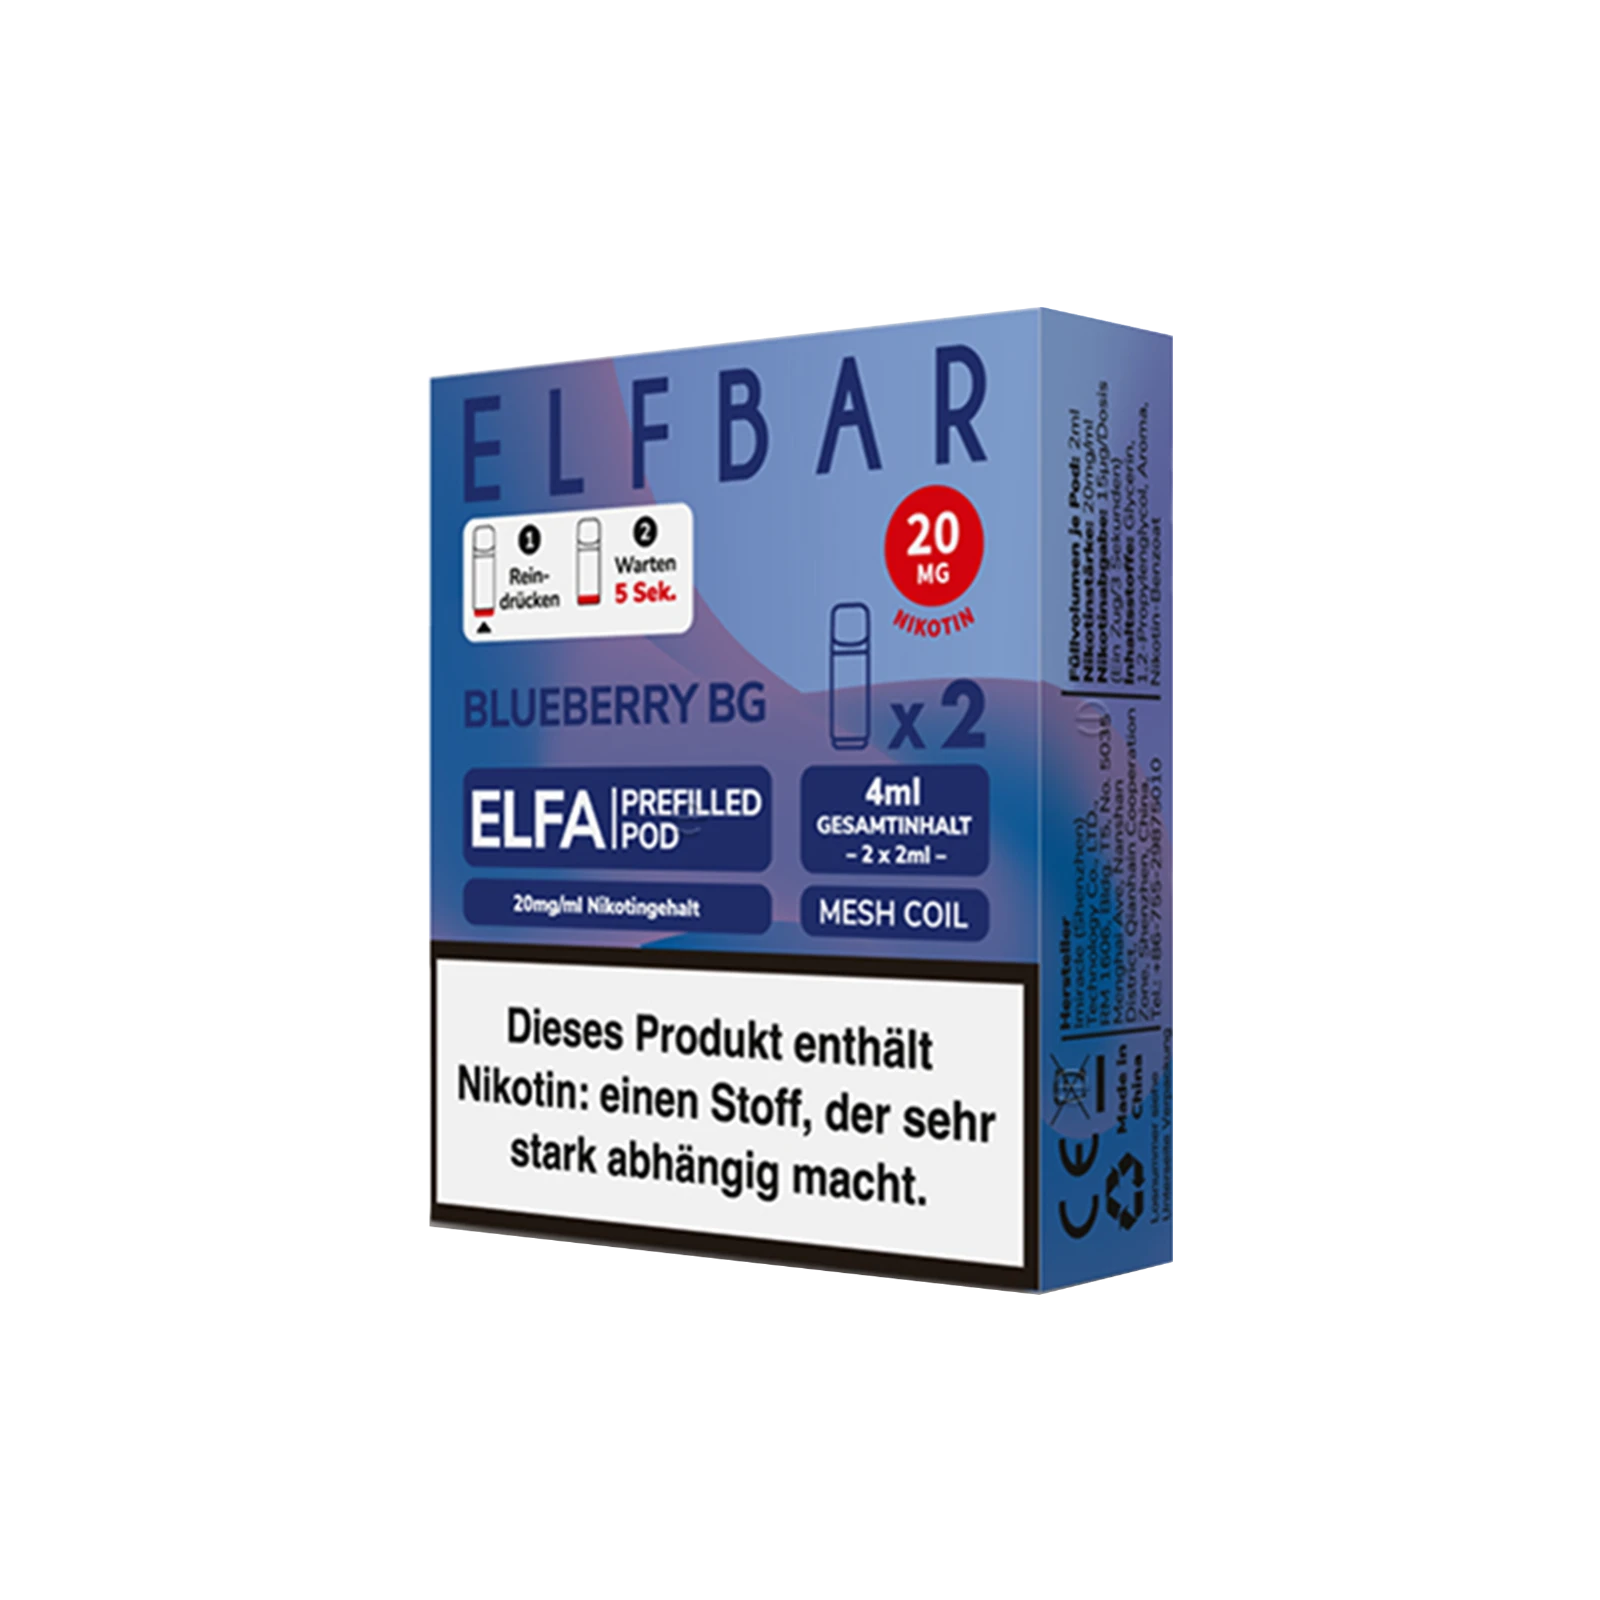 Elf Bar ELFA Prefilled Pod Blueberry Bubblegum | Neue Liquid Sorten1